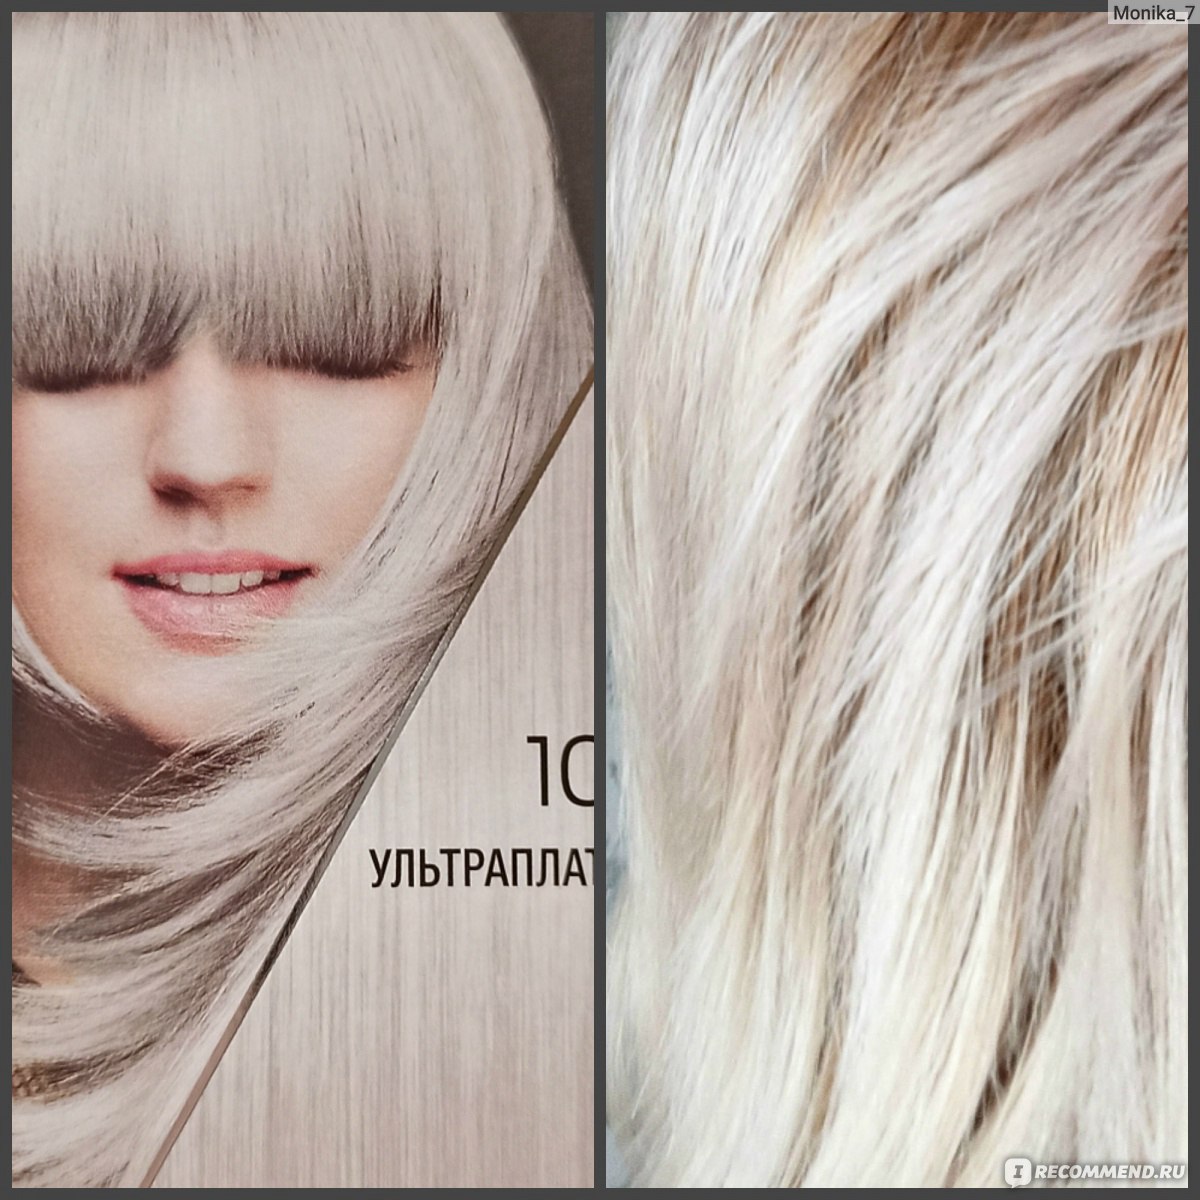 Платиновый блонд фото до и после краска для волос